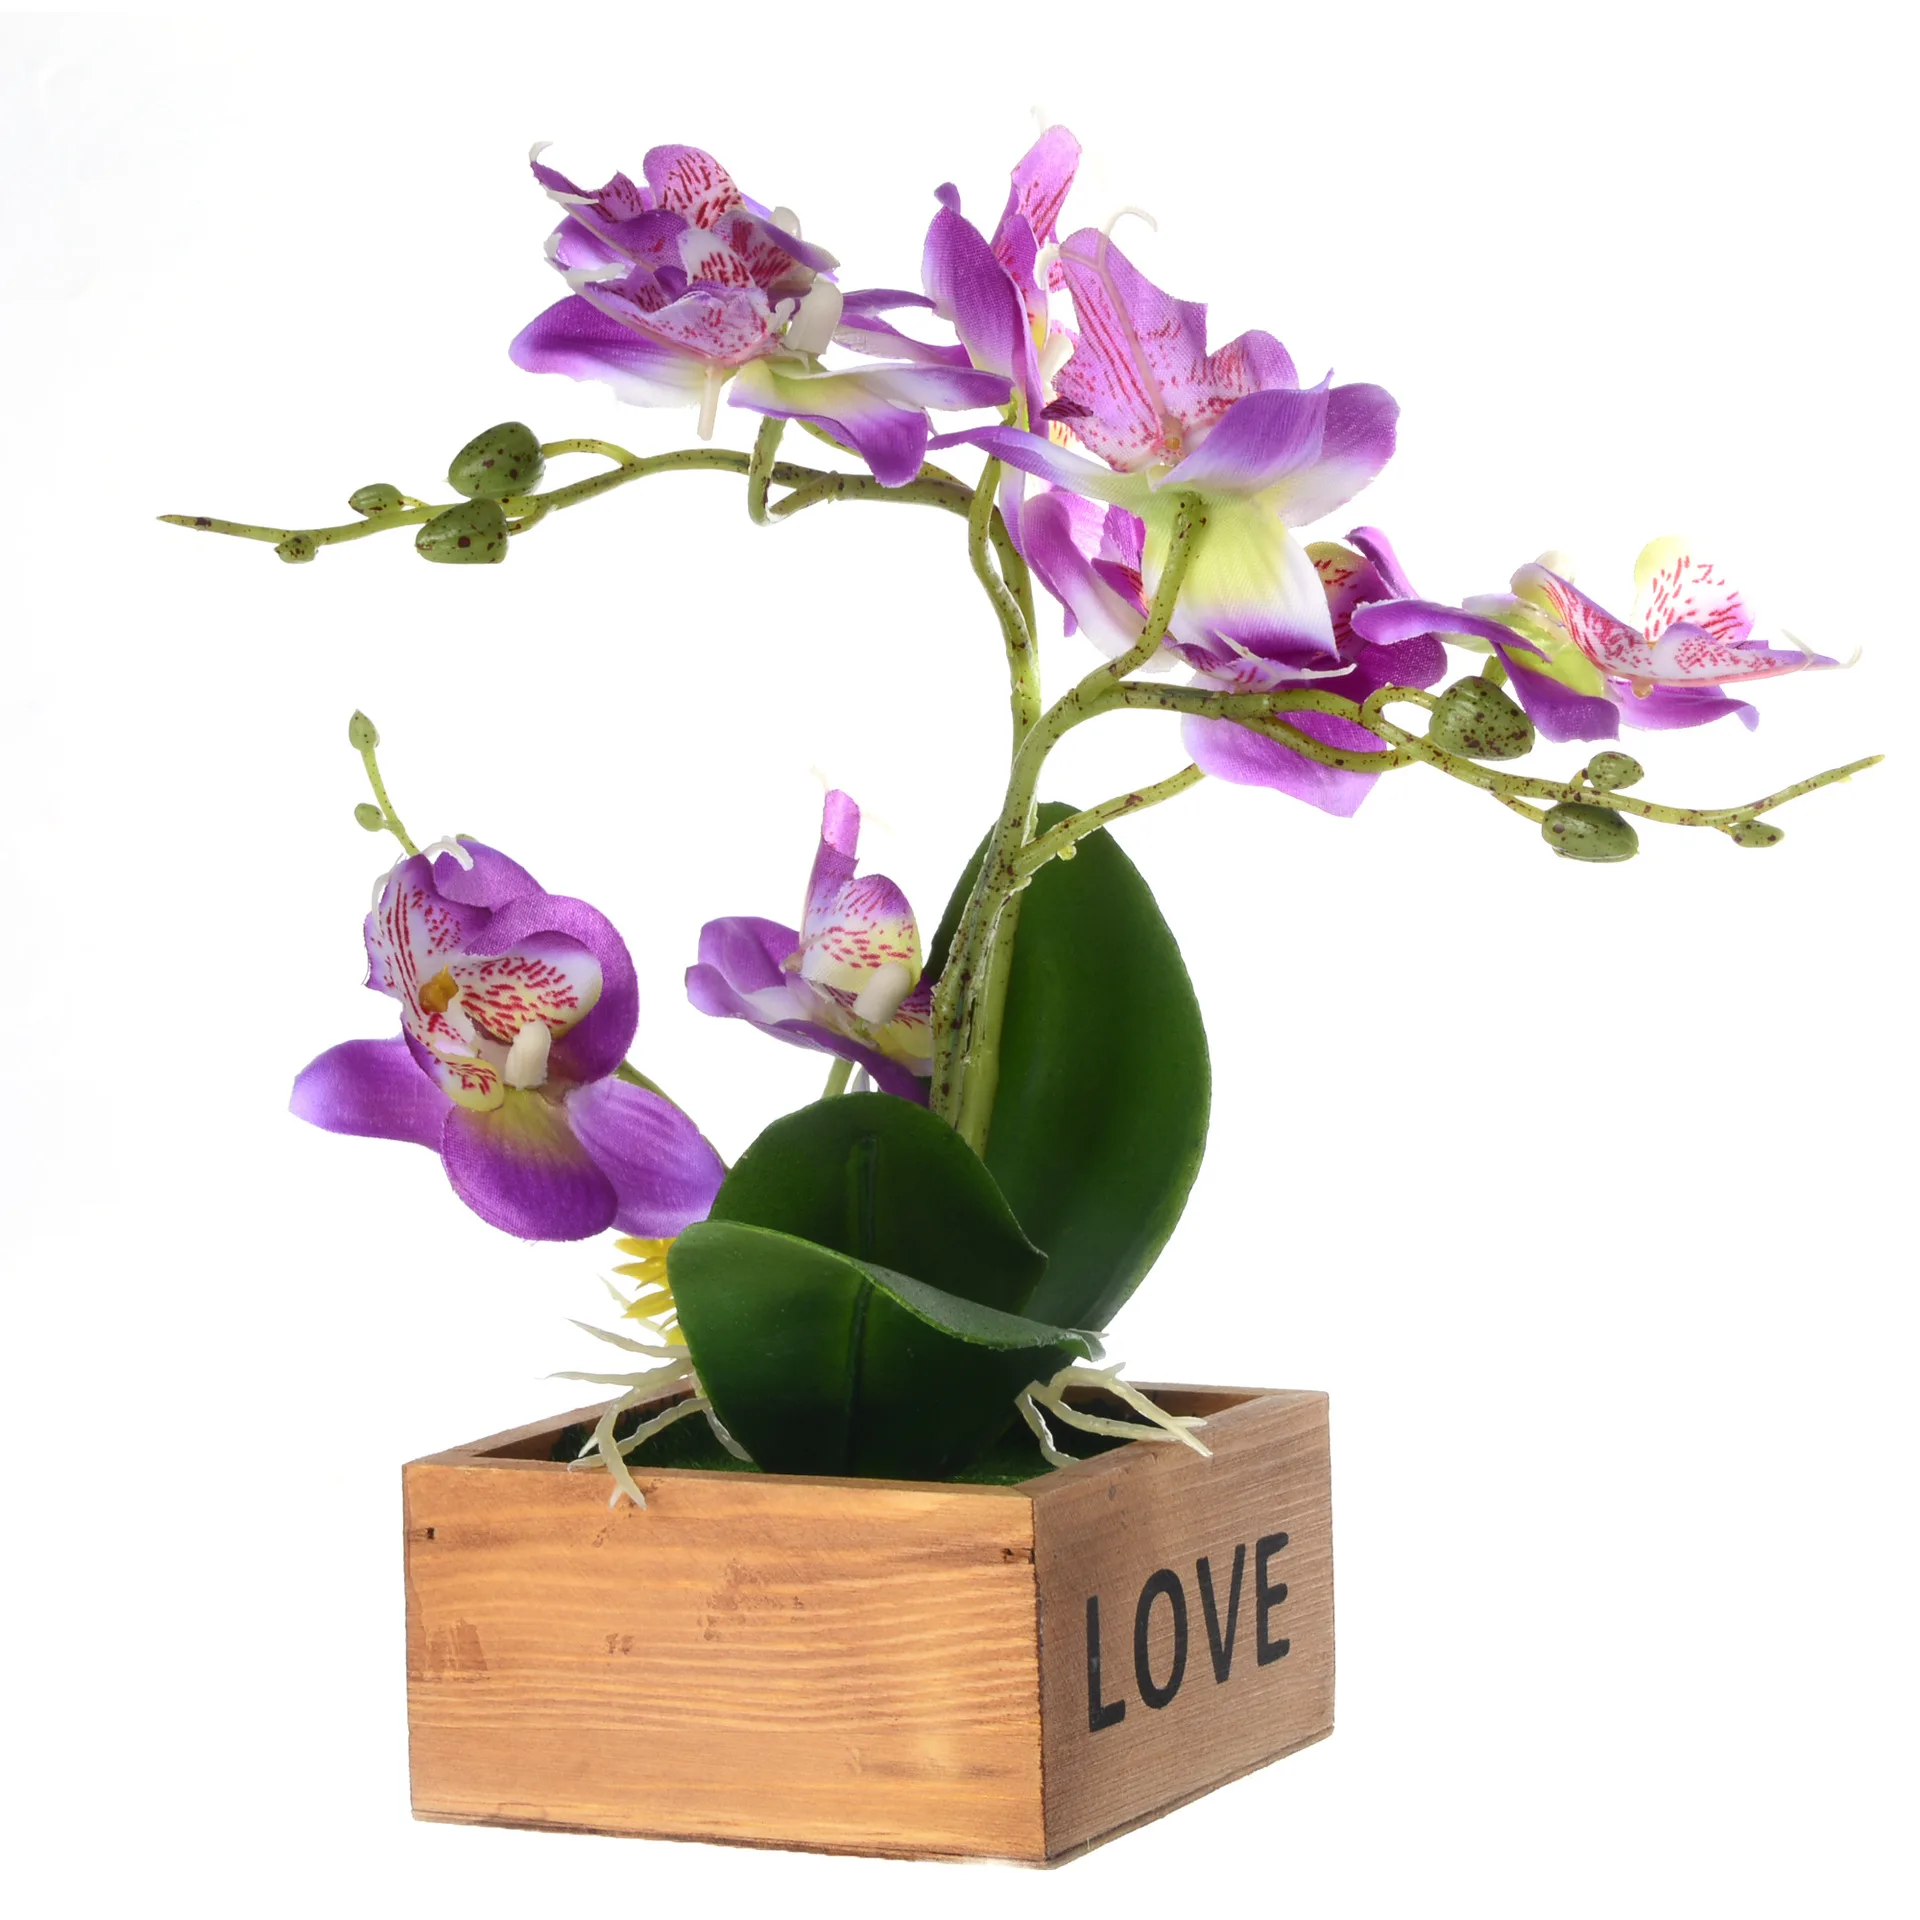 Один набор искусственная Орхидея, бабочка суккуленты в горшке растения для дома и сада украшения гостиной поддельные растения